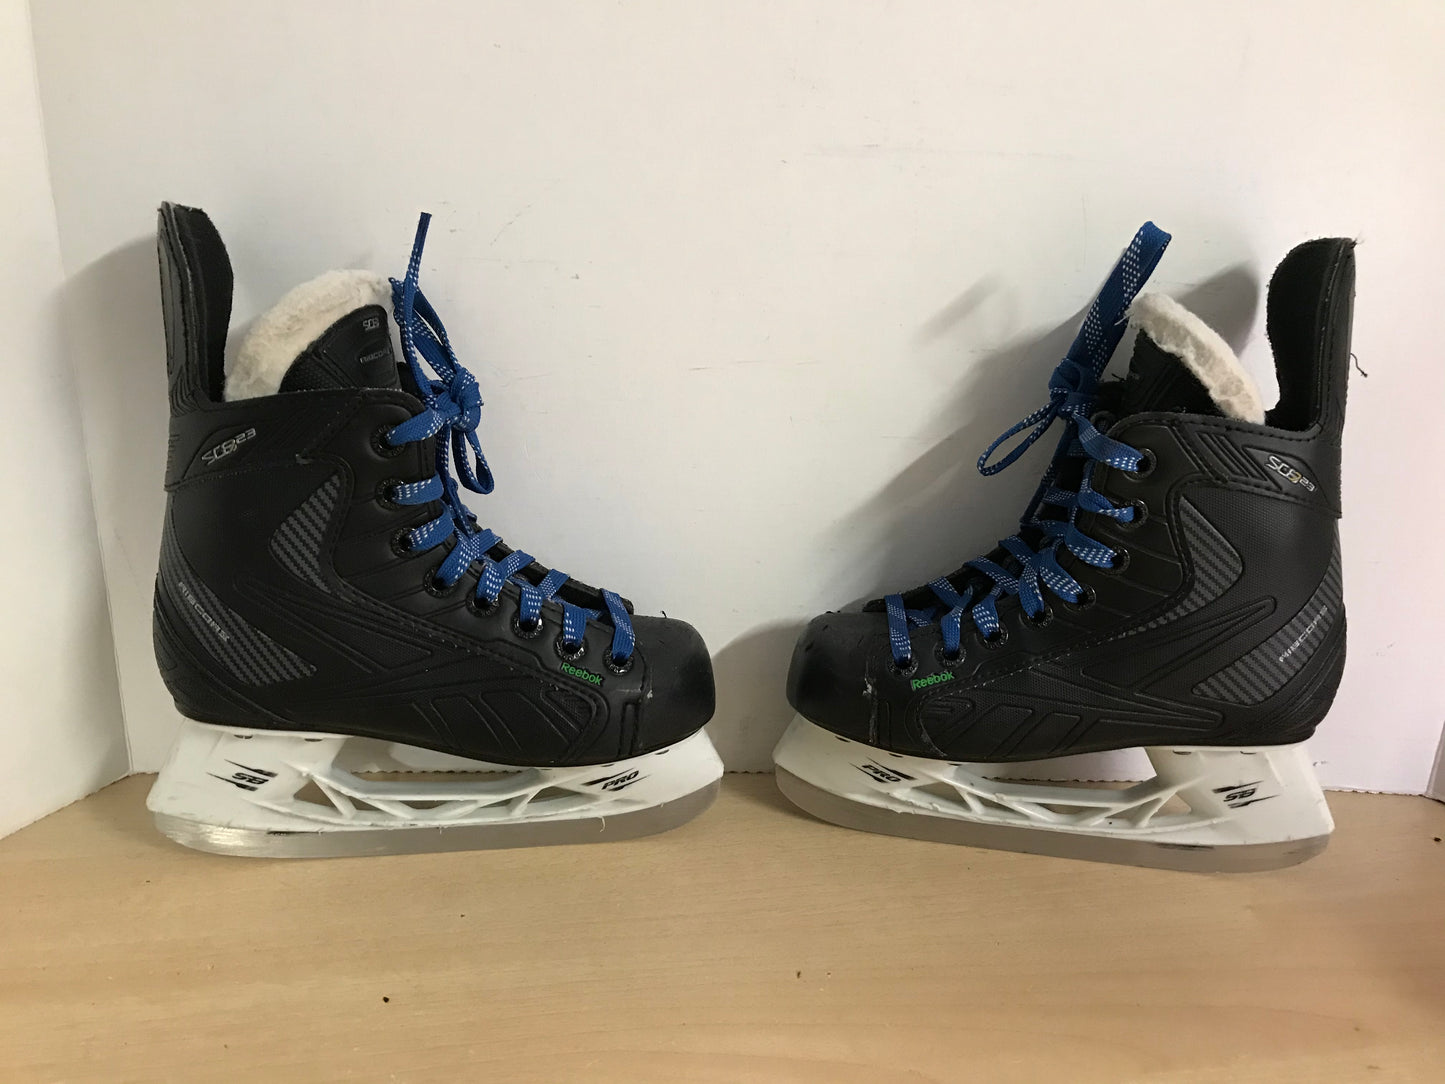 Hockey Skates Child Size 1 Shoe Size Reebok Ribcore